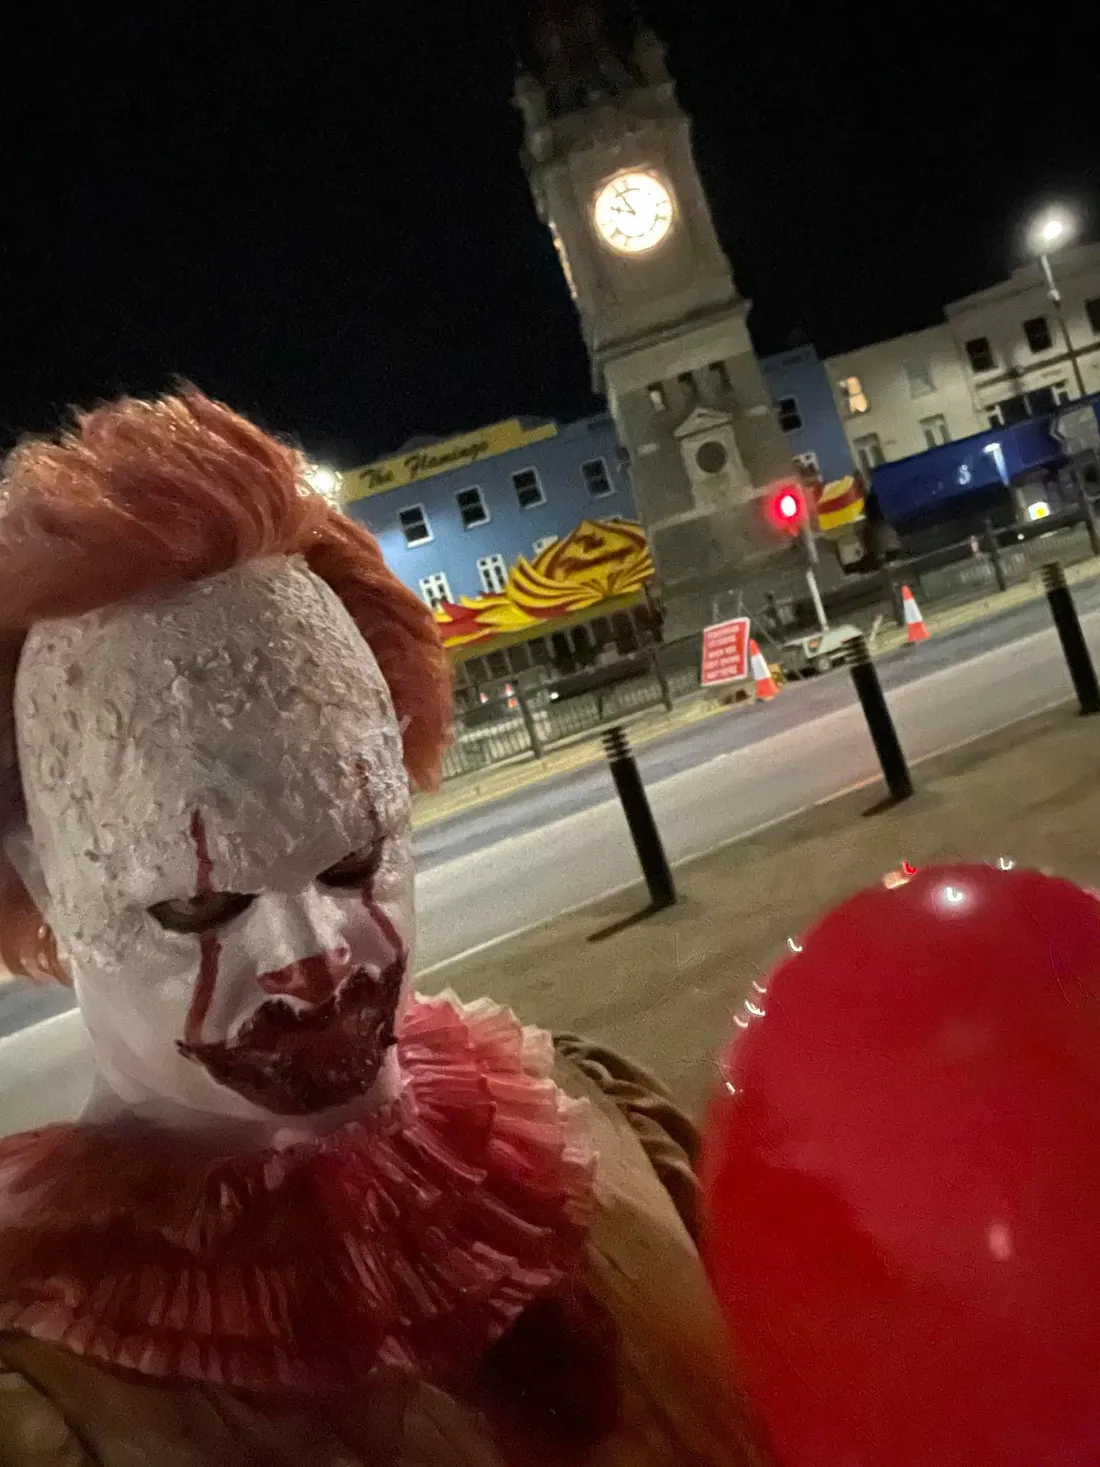 Cet homme déguisé en clown fait trembler plusieurs villes anglaises